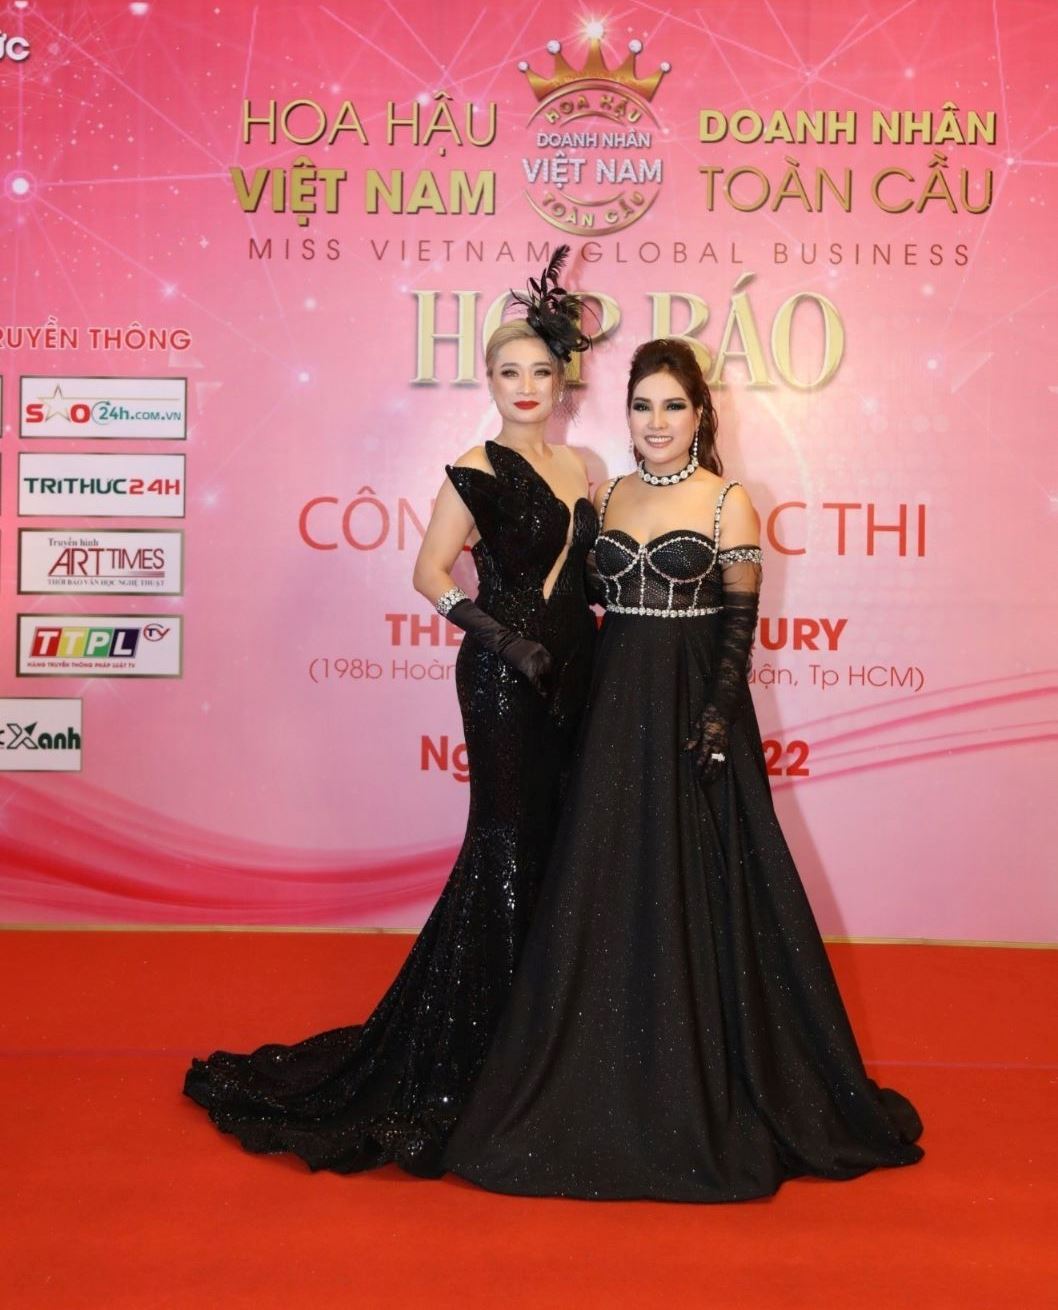 Hoa hậu Doanh nhân Việt Nam Toàn cầu 2022 8 Trưởng BTC Đặng Gia Bena khởi động cuộc thi Hoa hậu Doanh nhân Việt Nam Toàn cầu 2022